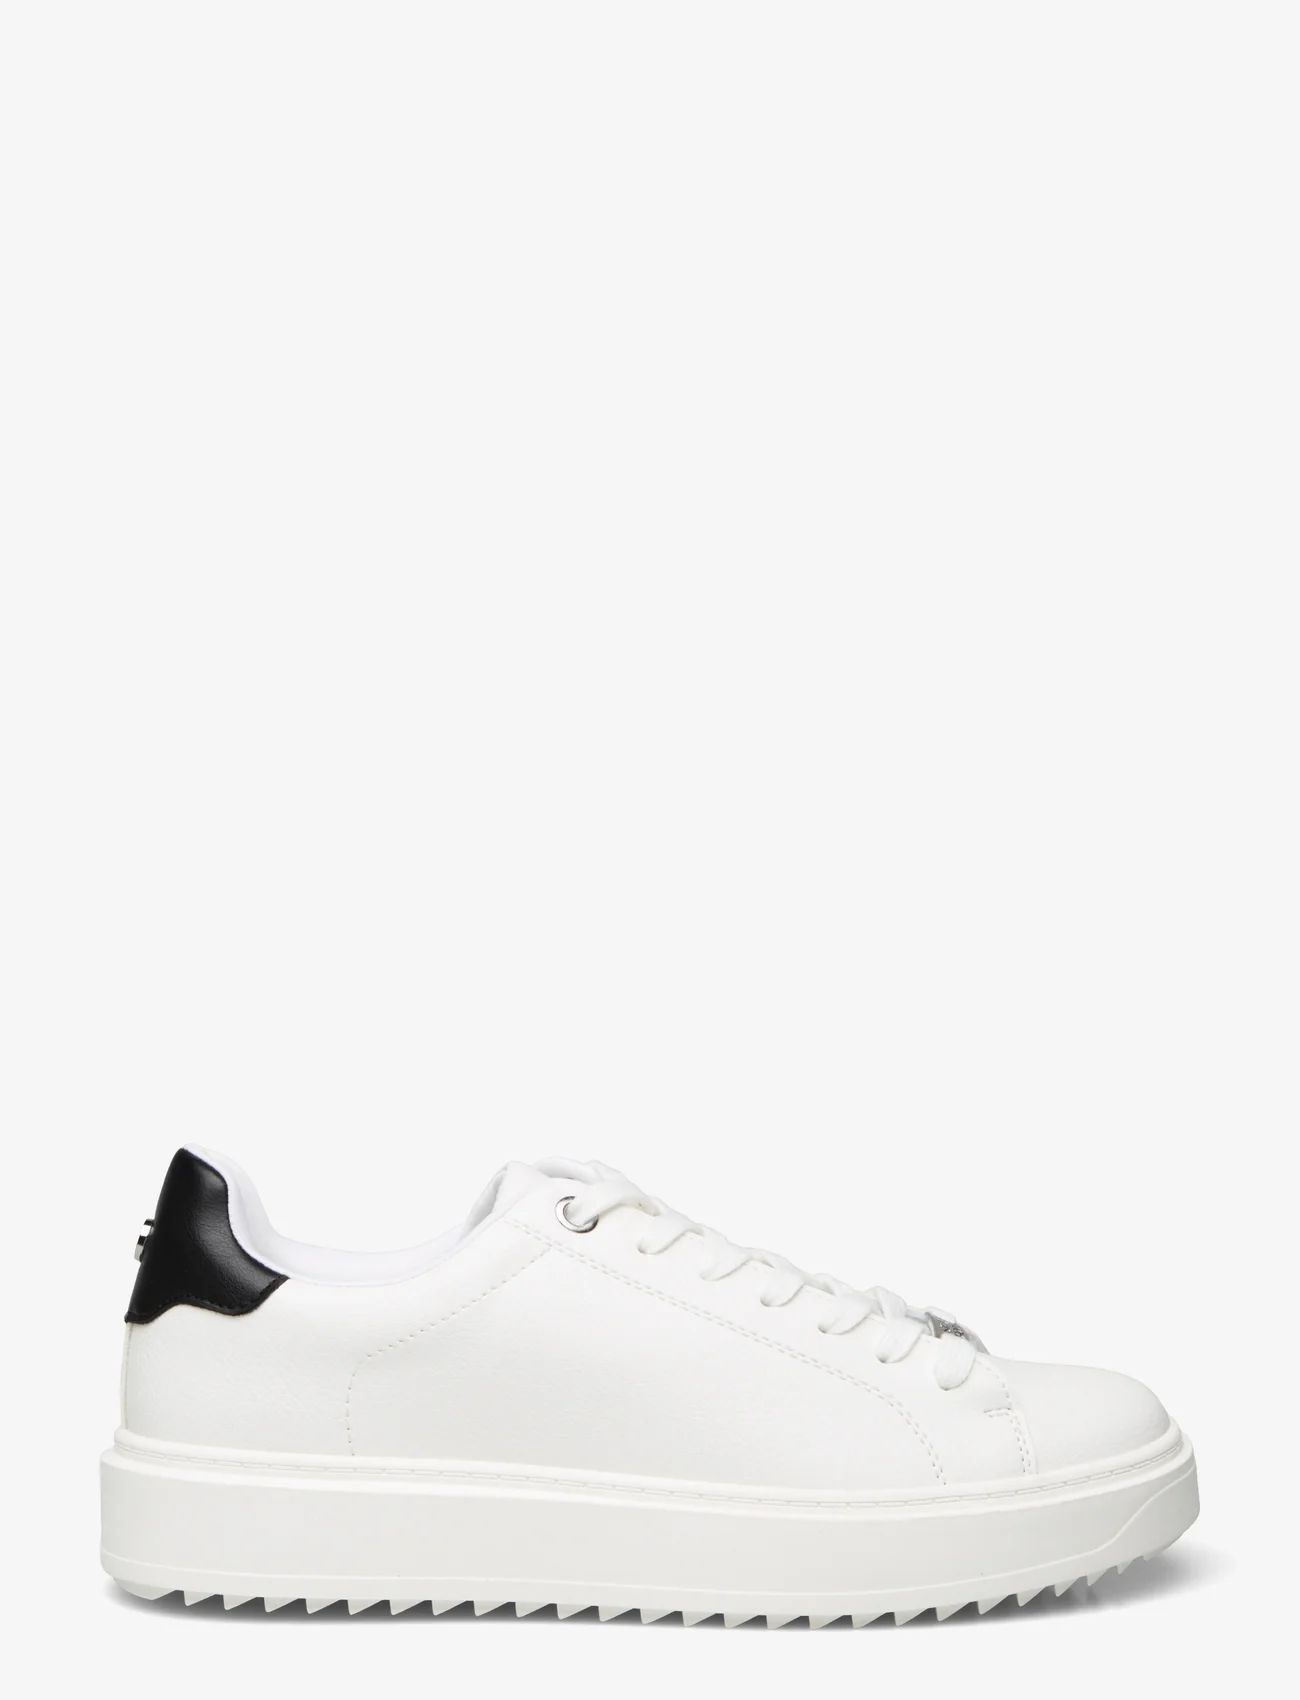 Steve Madden - Catcher Sneaker - sneakers med lavt skaft - white/black - 1